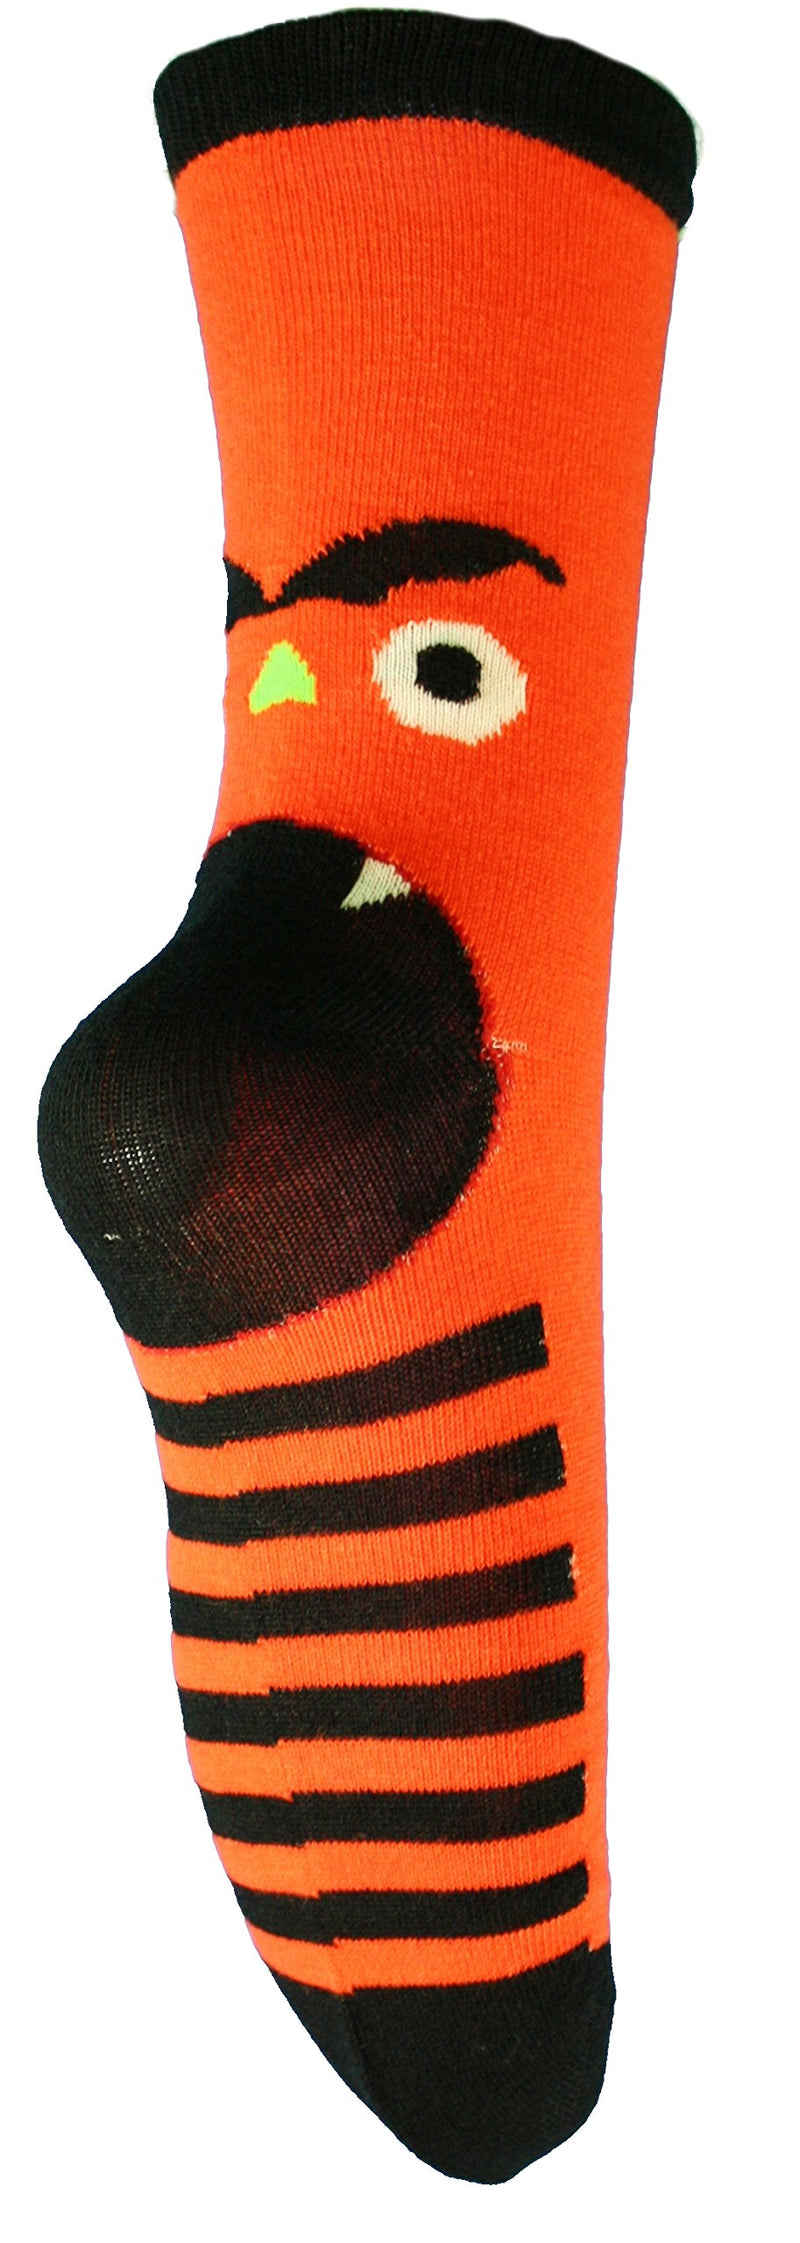 Knit Monster Face Socks - Orange